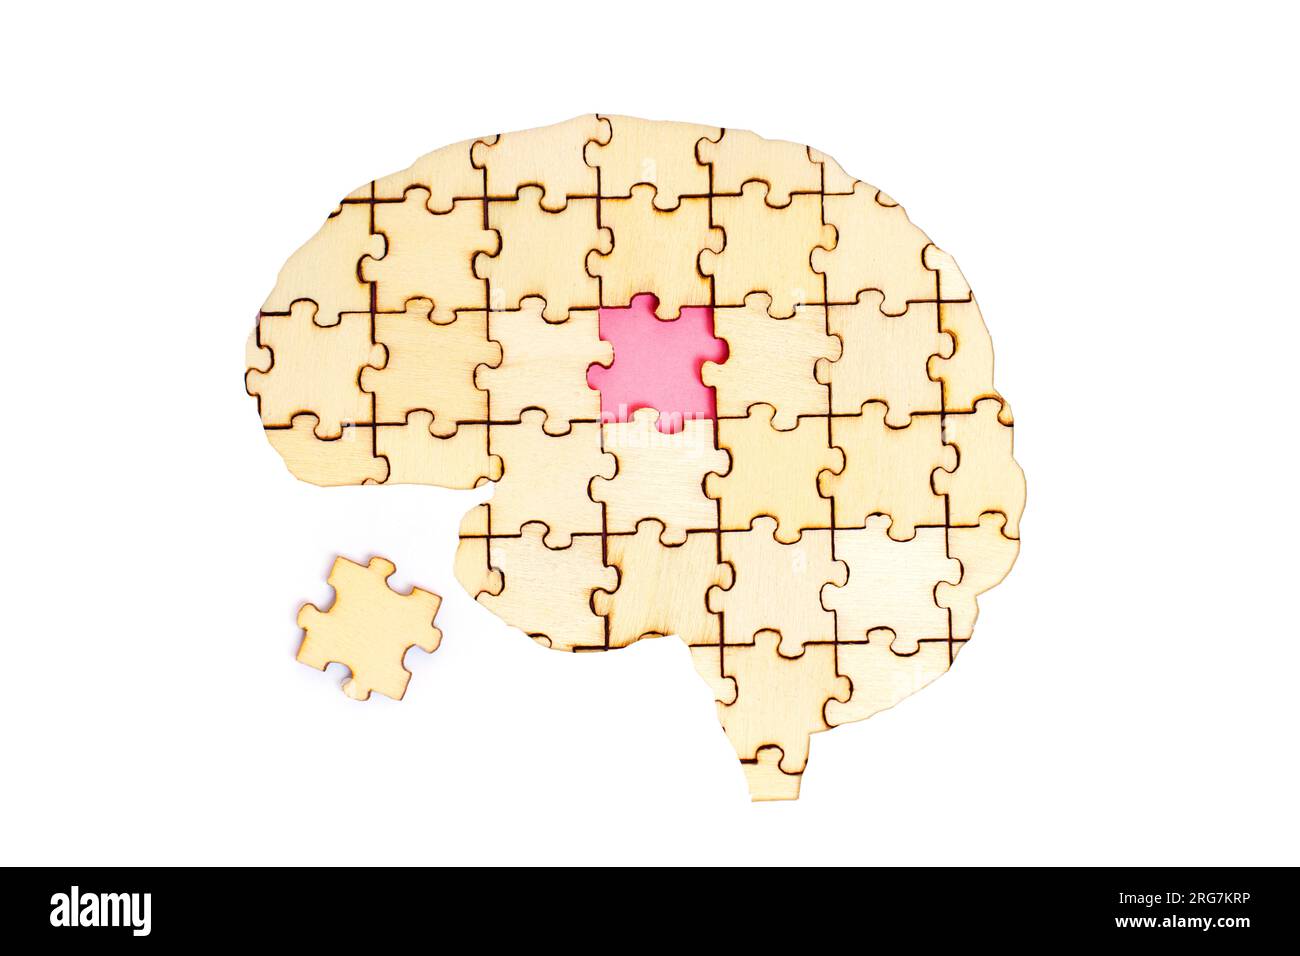 Forme de cerveau humain faite à partir de pièces de puzzle en bois avec l'élément final encore à placer. Quête de connaissances et recherche constante de réponses. Banque D'Images